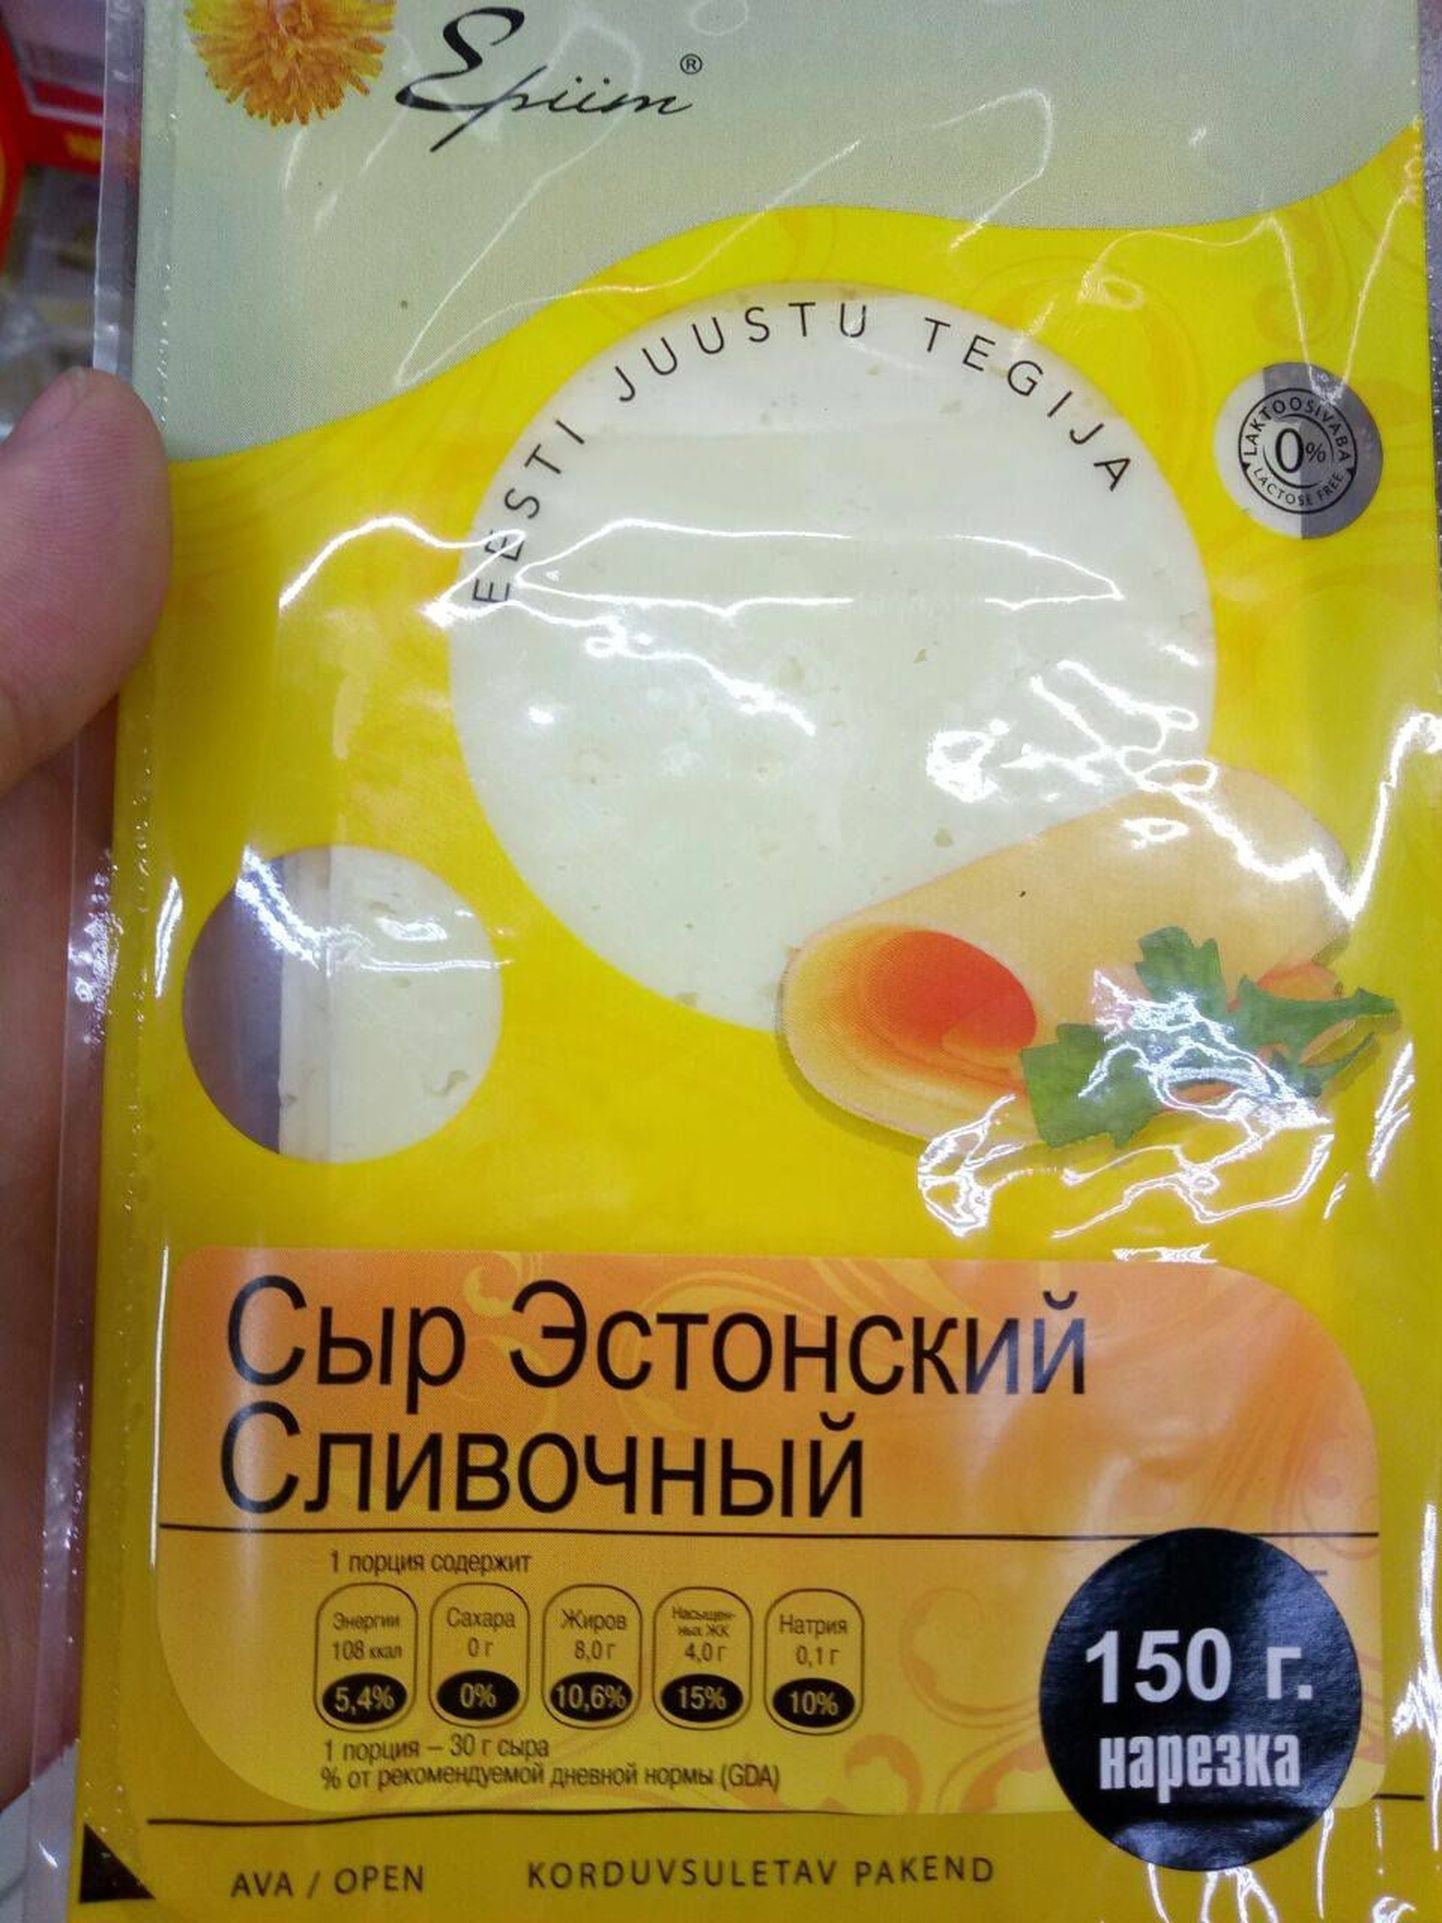 Эстонский сыр на российском рынке.